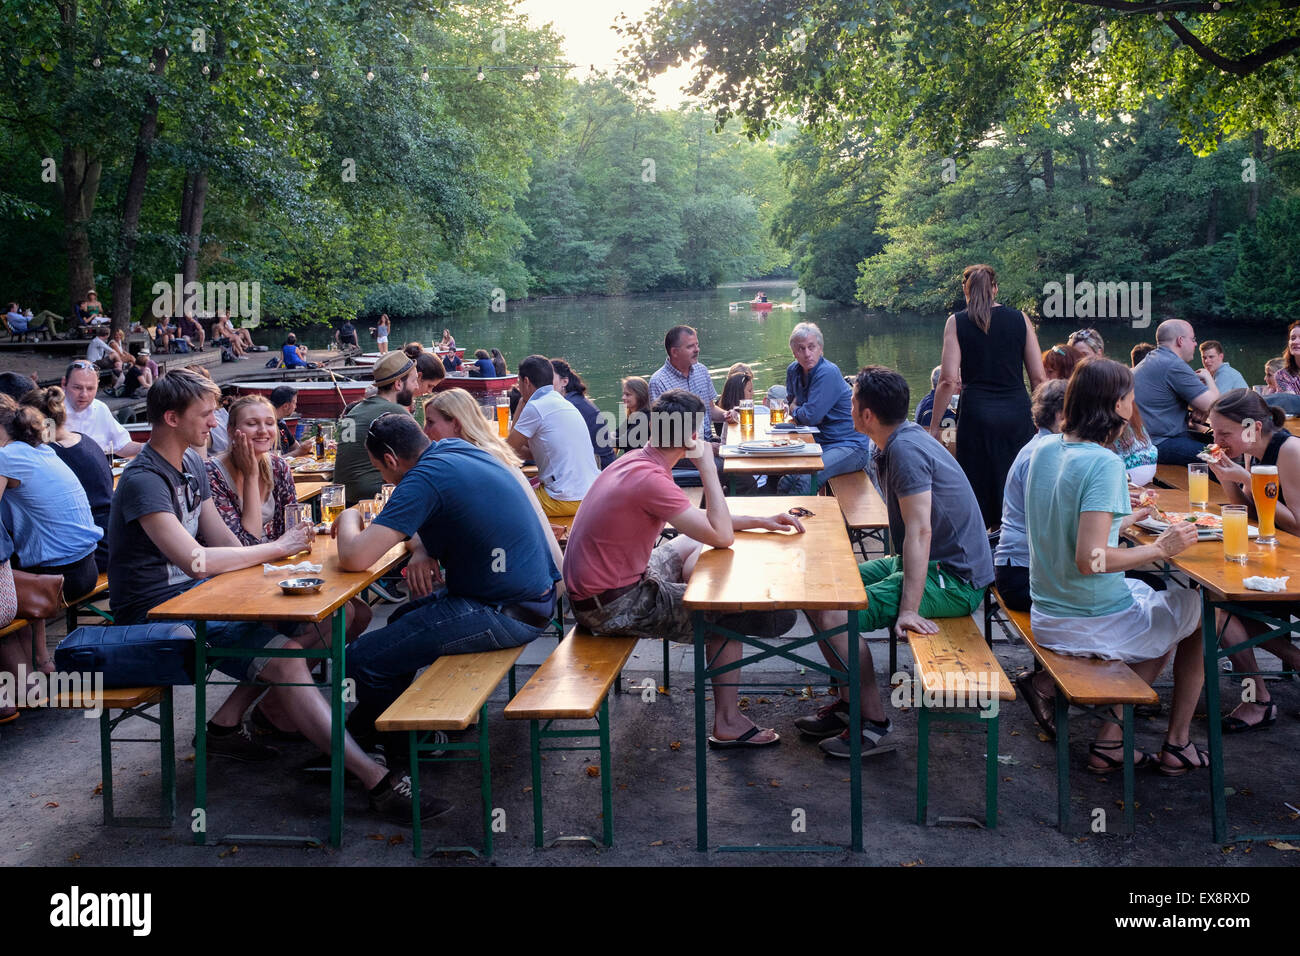 Busy beer garden in summer at Cafe am Neuen See in Tiergarten park in Berlin Germany Stock Photo